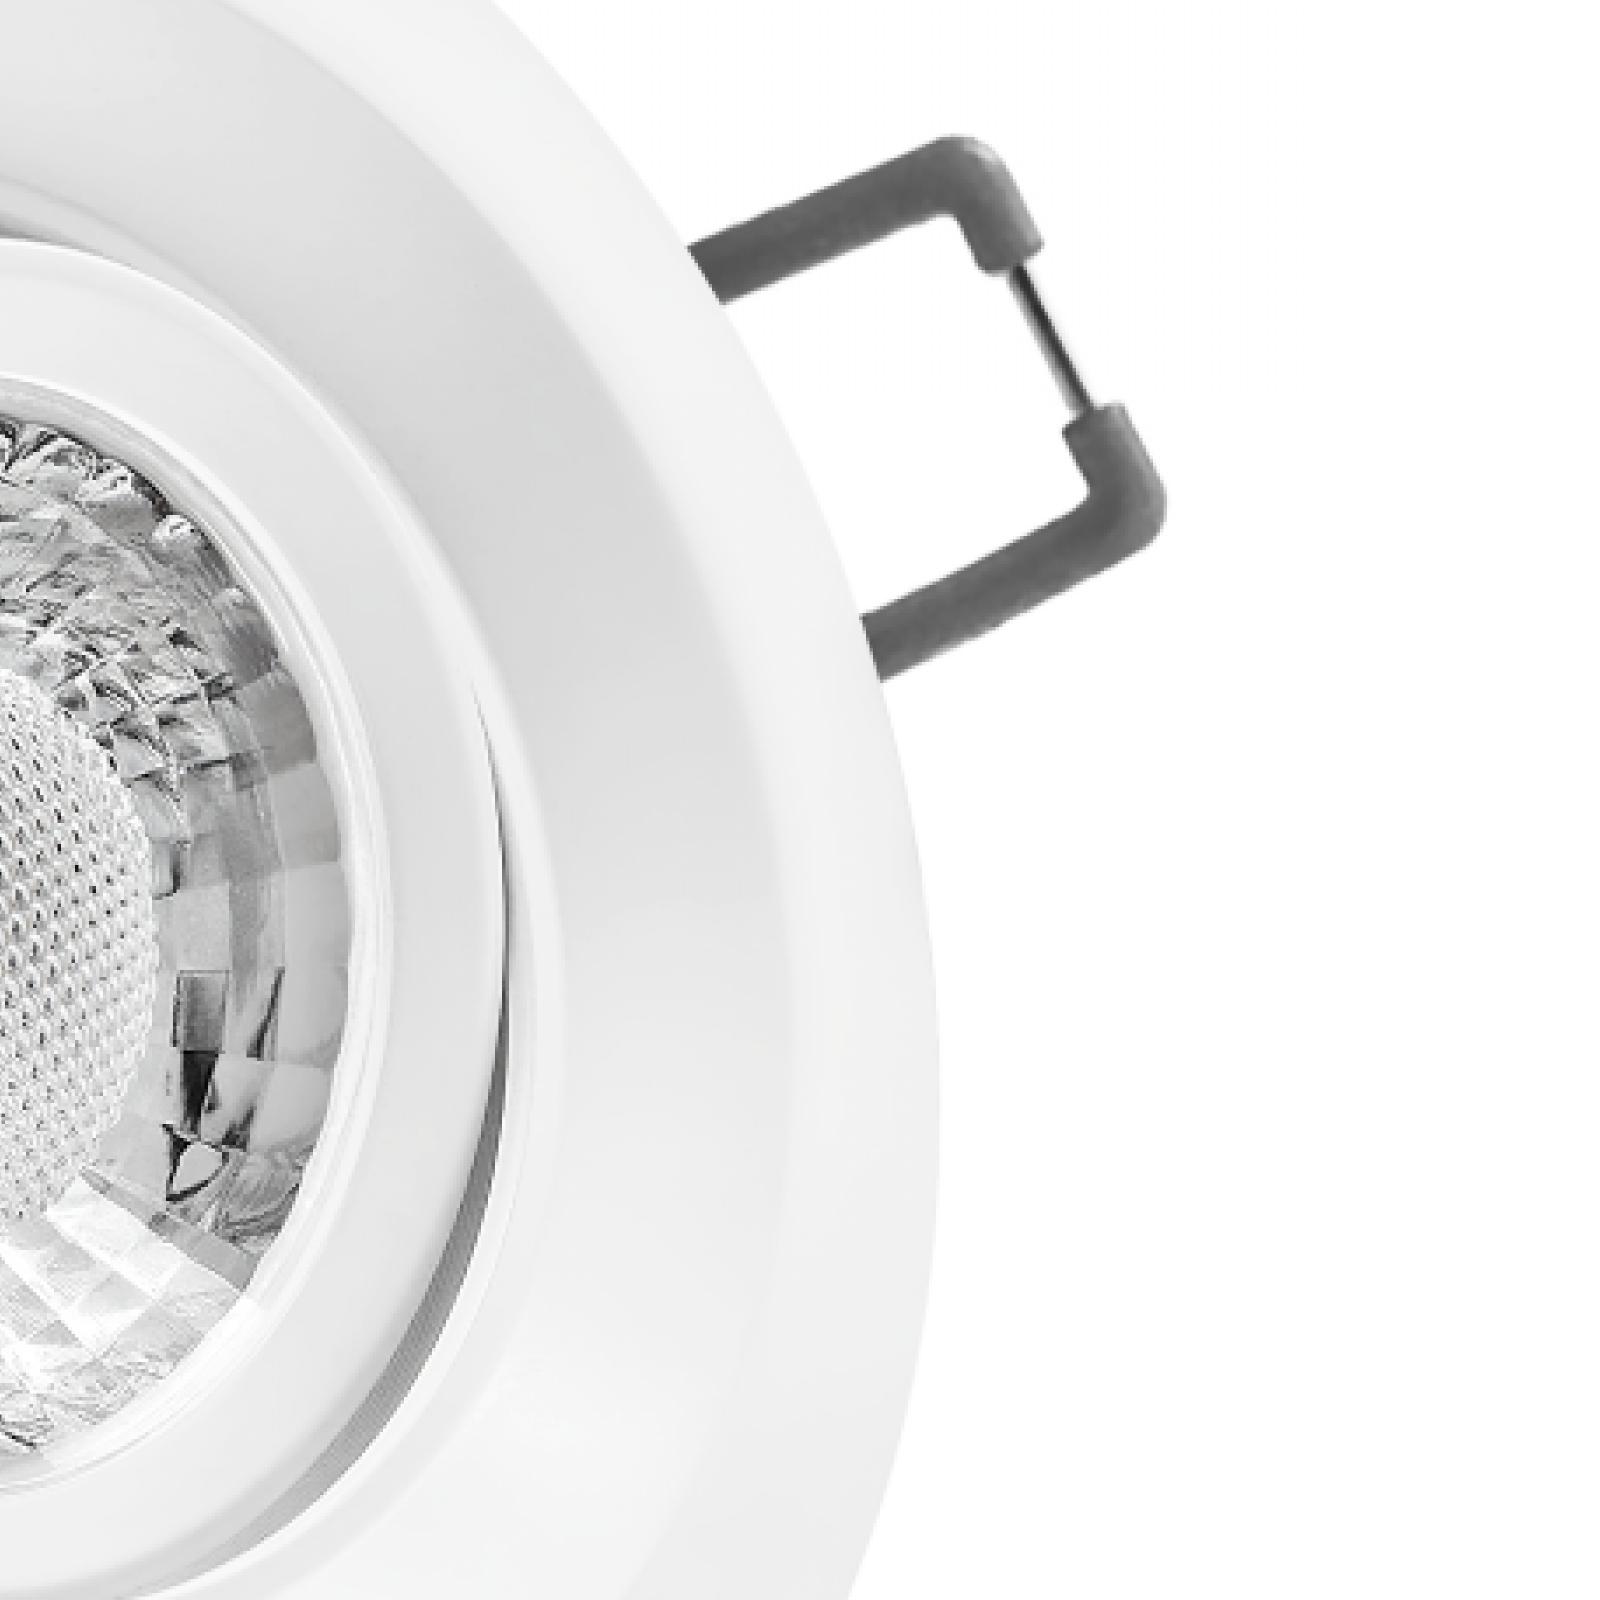 LED Einbaustrahler weiß | Runder Einbauspot | 360° schwenkbar | Lochmaß Ø 68mm - 95mm | Einbautiefe 64mm | Anschlussfertig mit GU10 230V Fassung 